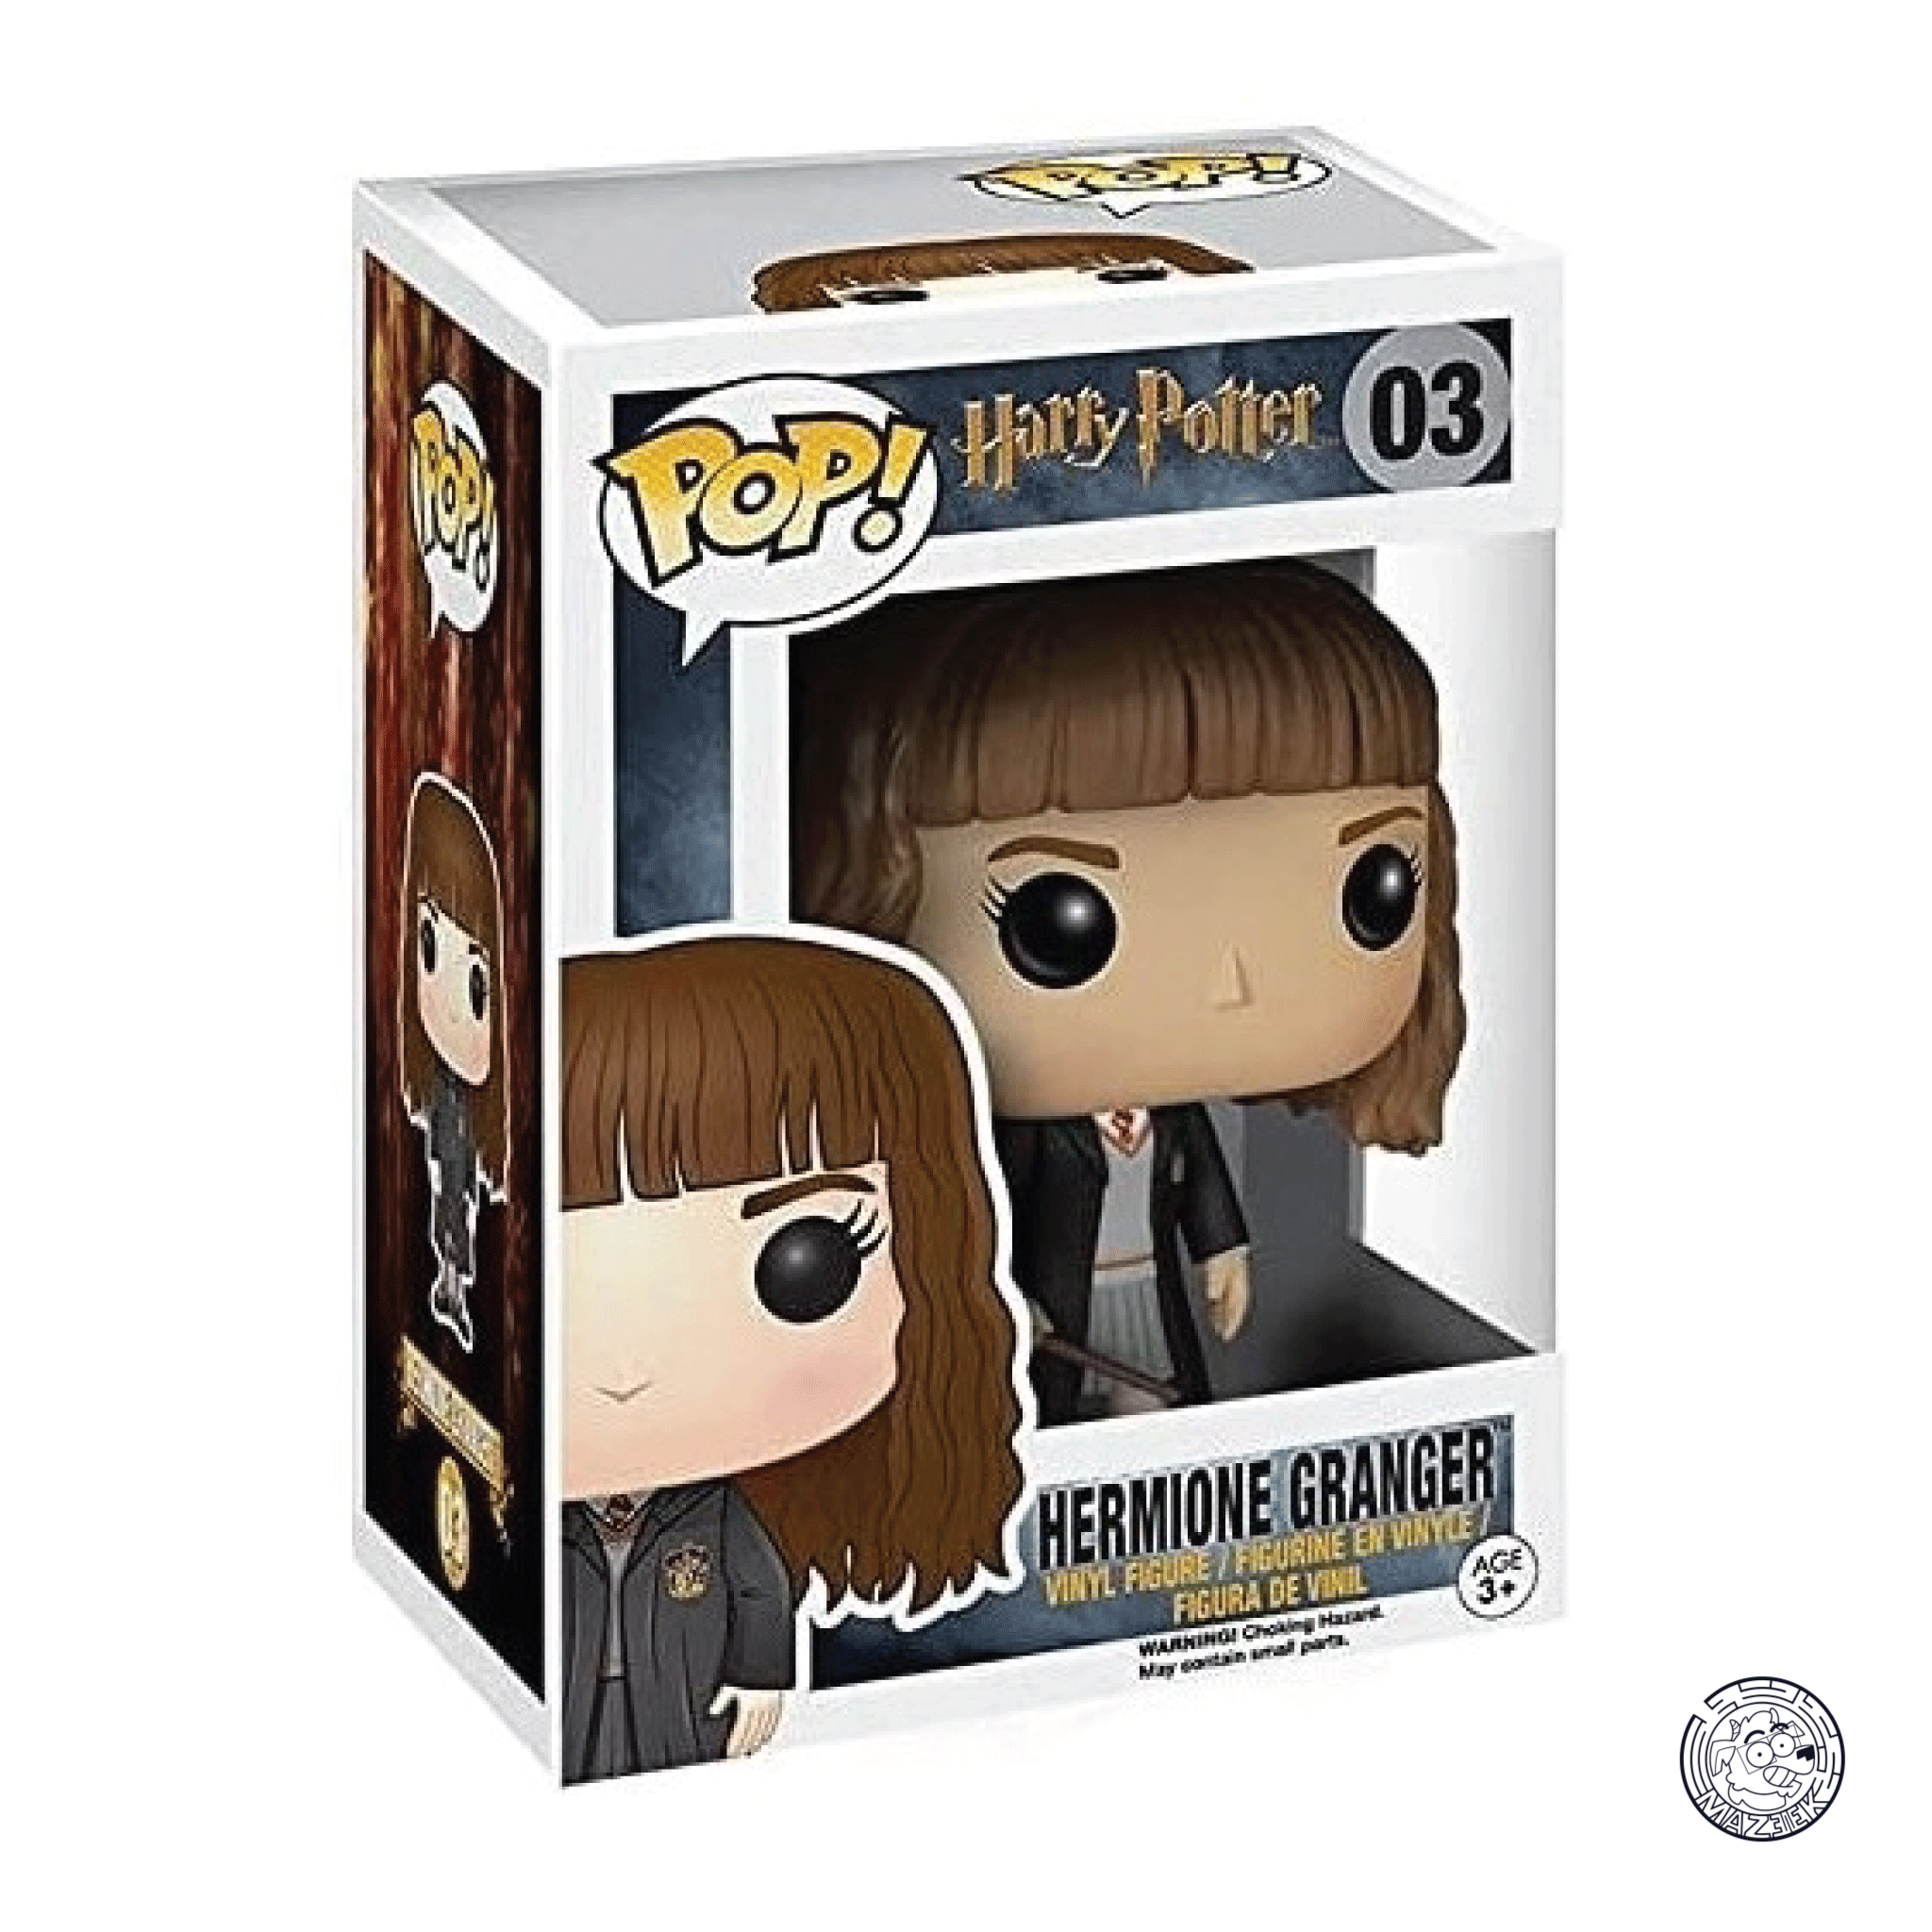 Funko POP! Harry Potter: Hermione Granger 03